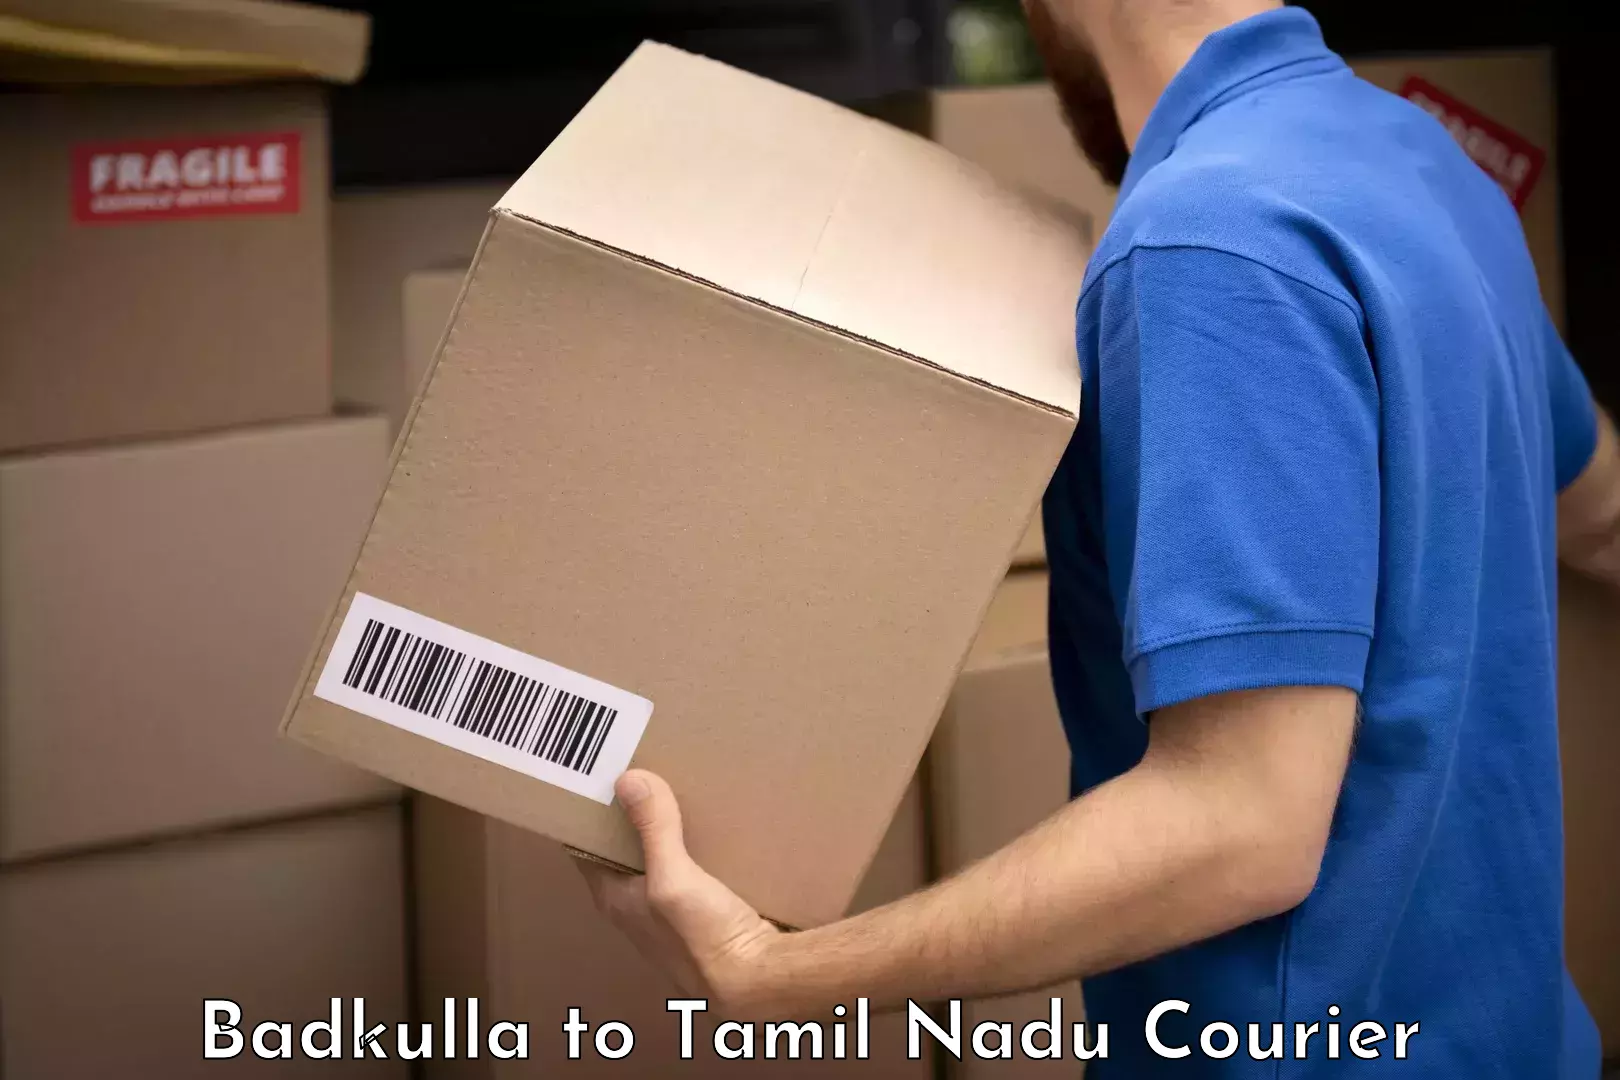 Baggage shipping service Badkulla to Periyakulam